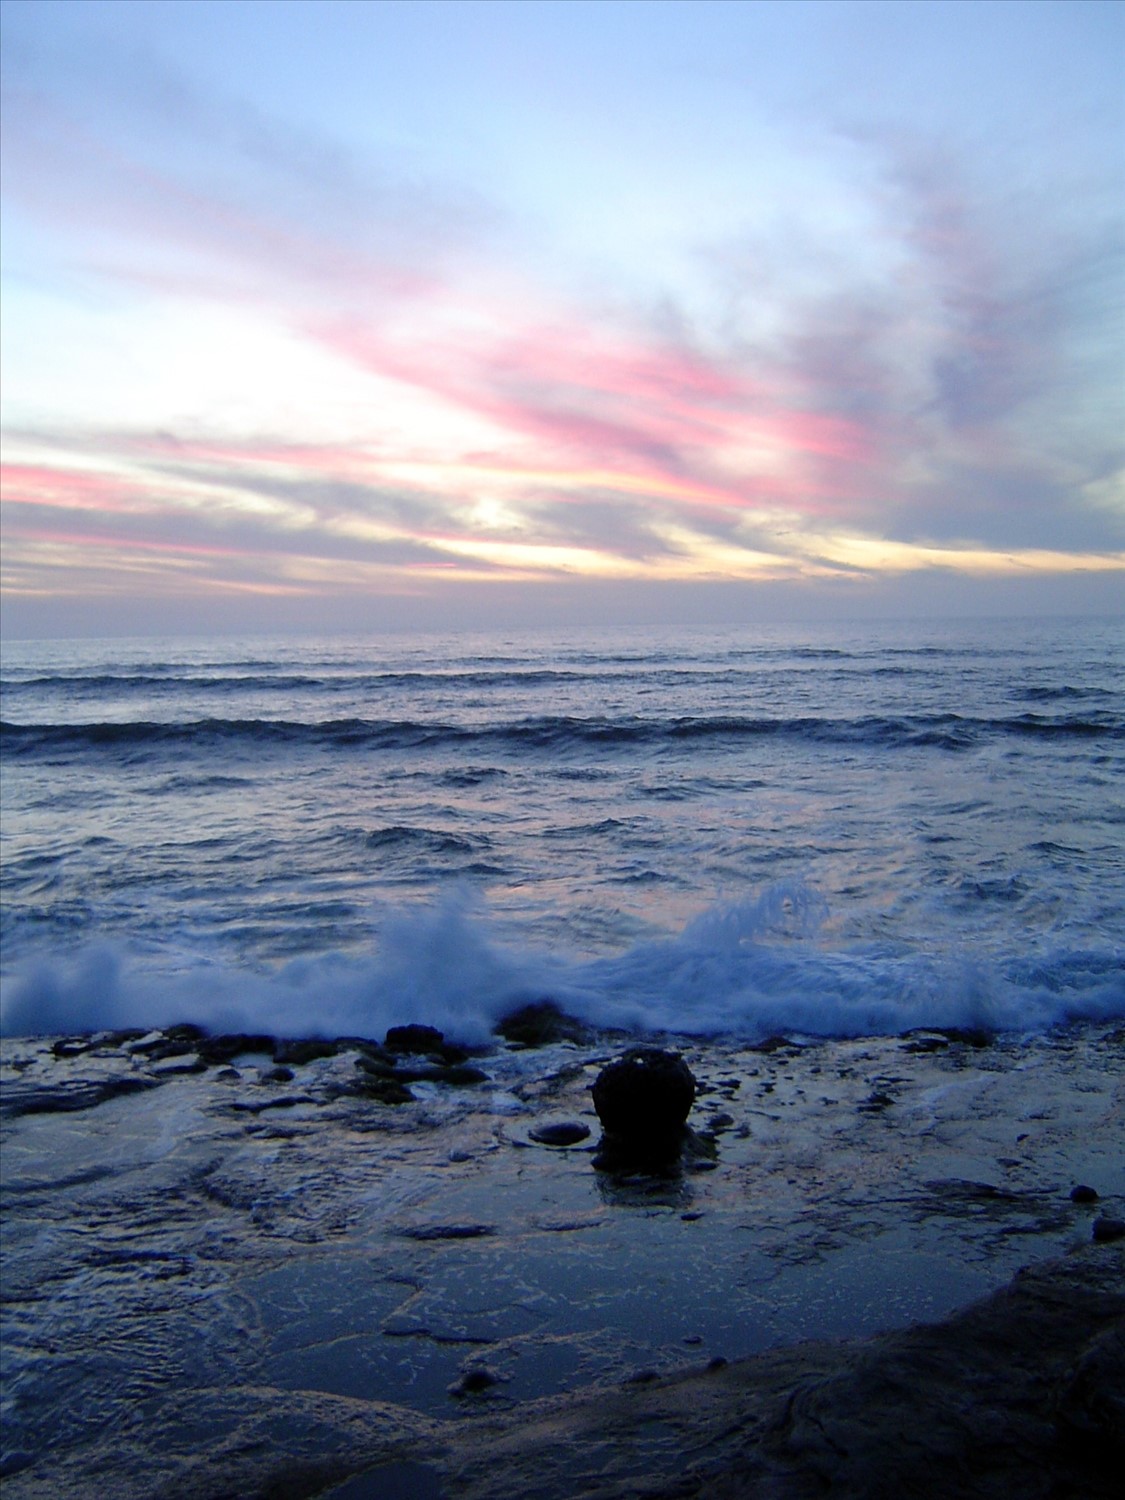 Sunset on Coronado Island. DSC00497.jpg. Uploaded by Erik Hoffmann on 2/24/2004. 